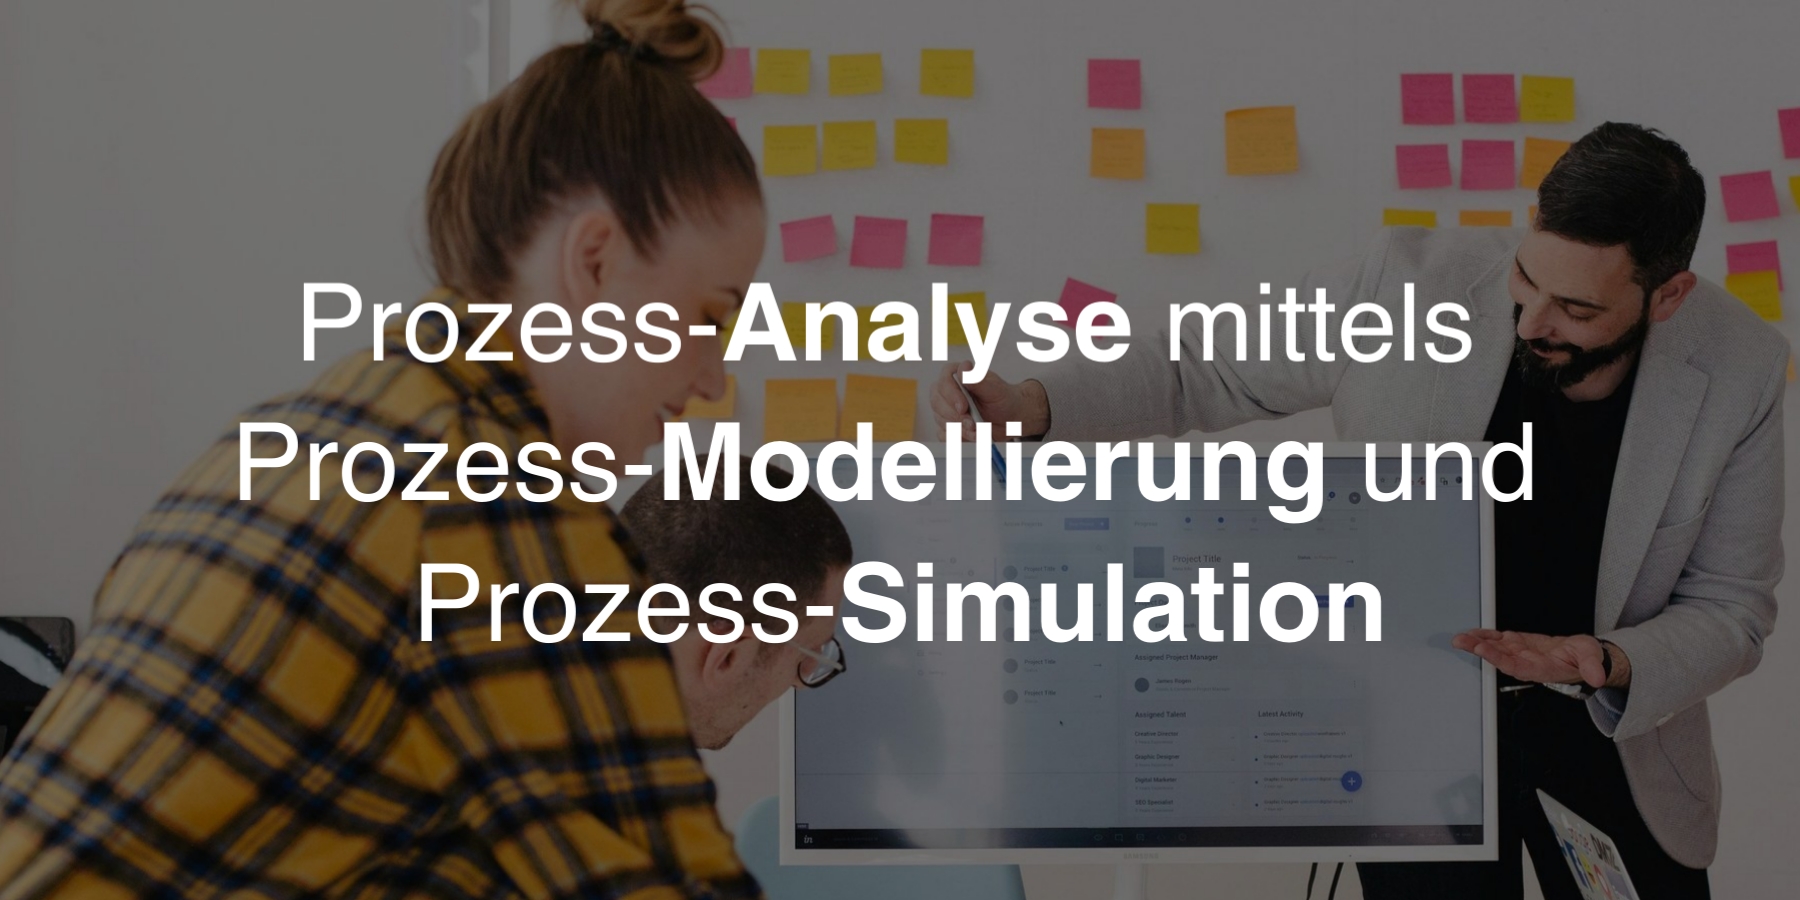 Prozessanalyse mittels Prozessmodellierung und -simulation